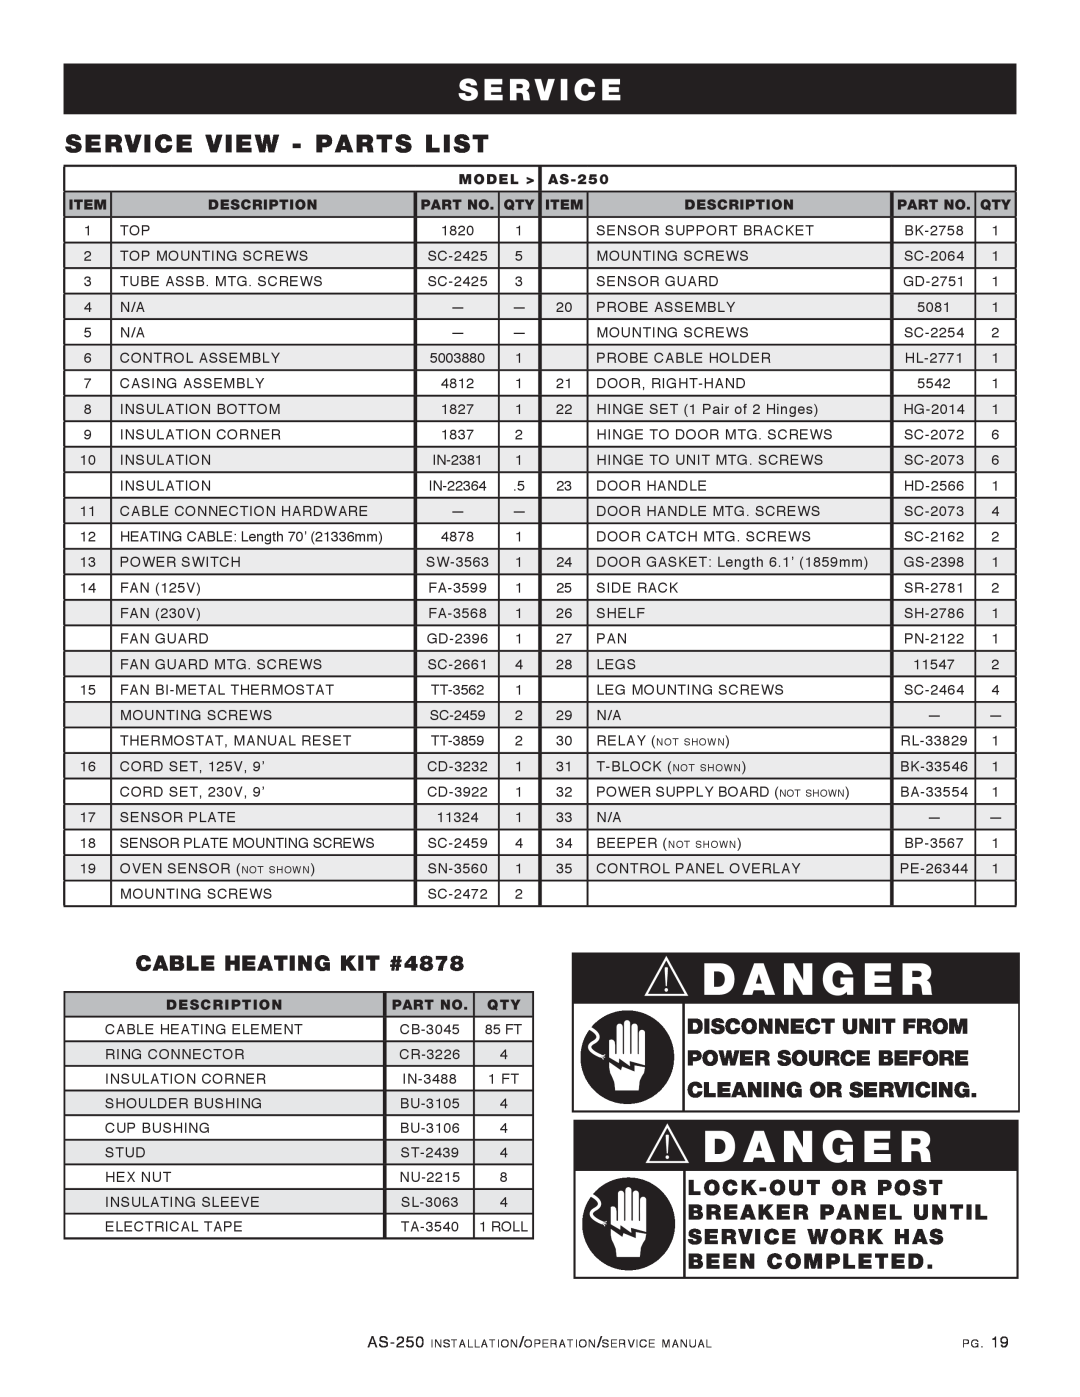 Alto-Shaam AS-250 manual Service View - Parts List, CABLE HEATING KIT #4878, Danger, S E R V I C E, Model, Description 